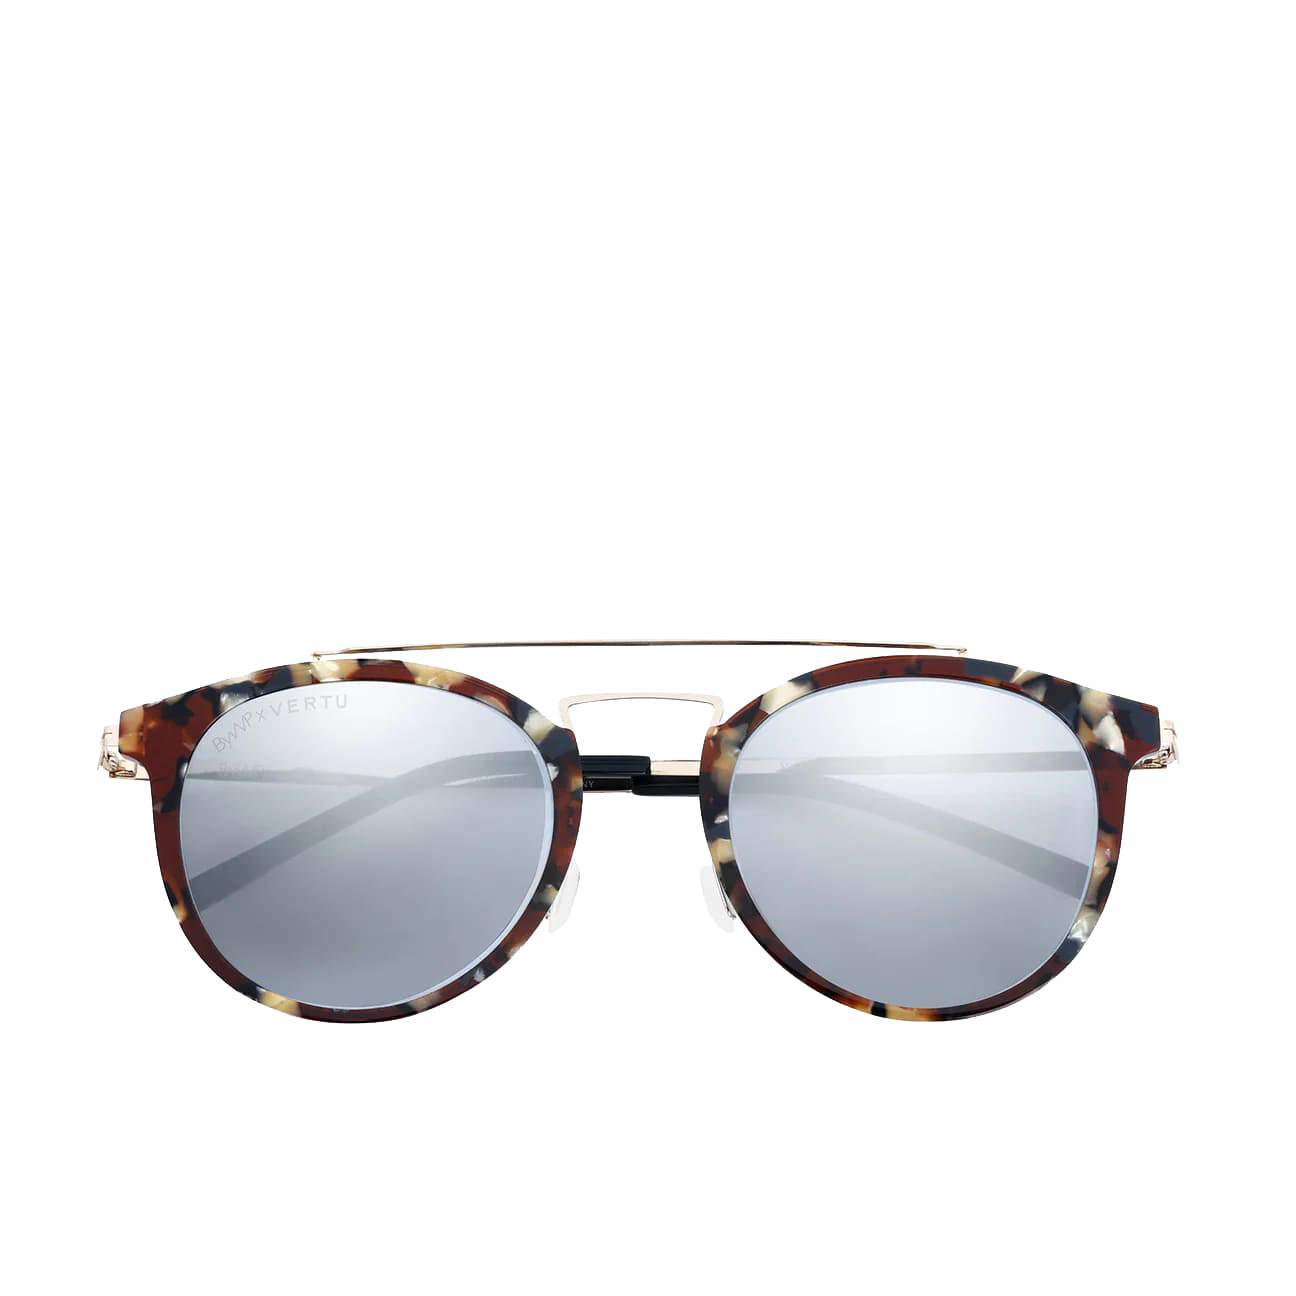 retro tortoiseshell sunglasses frame for women and men